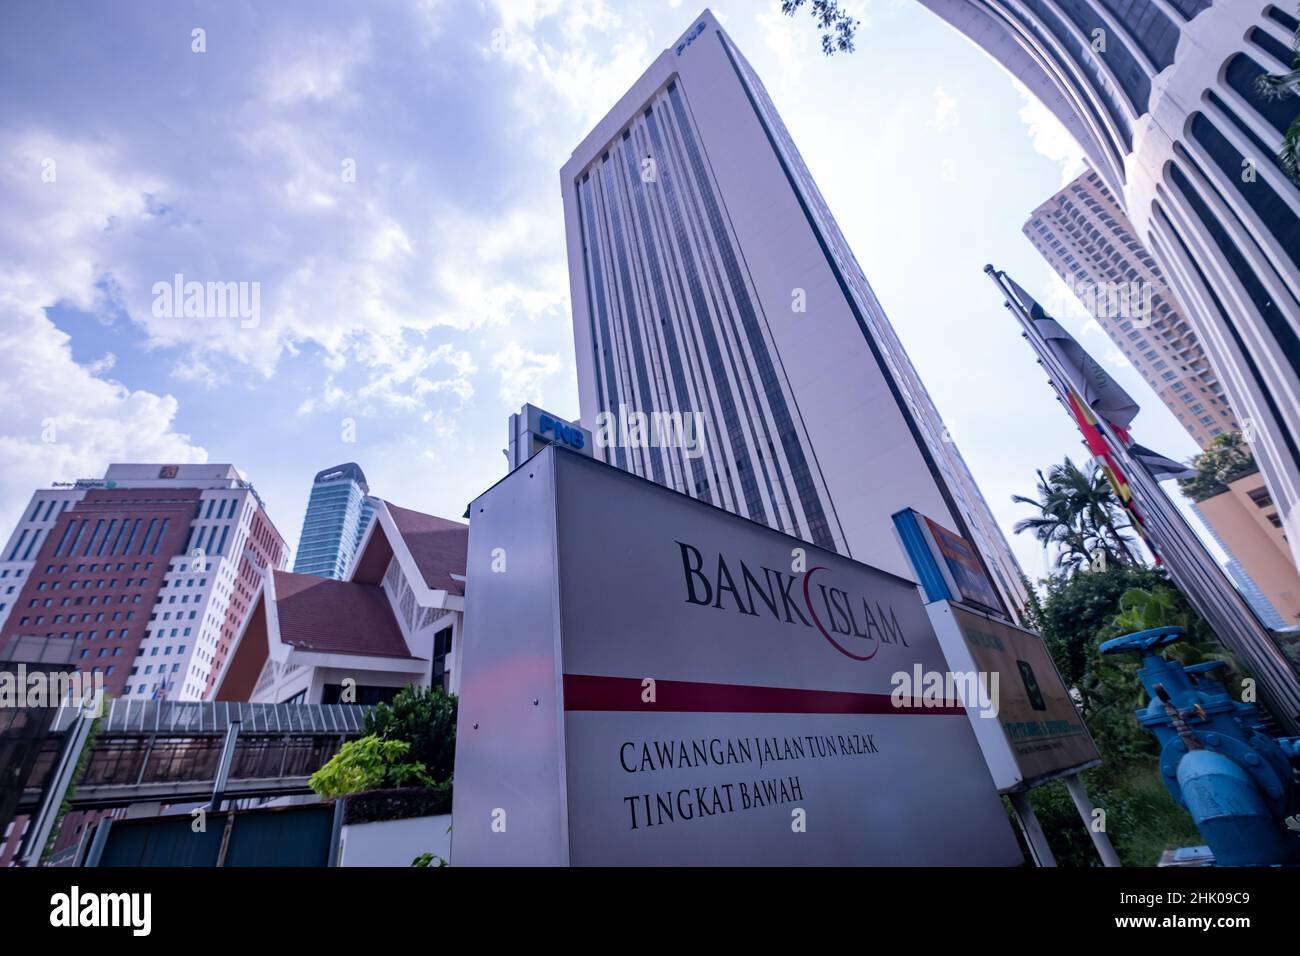 Kuala Lumpur, Malaisie - janvier 2022 : bâtiments financiers de Kuala Lumpur. Banque de l'Islam Banque D'Images